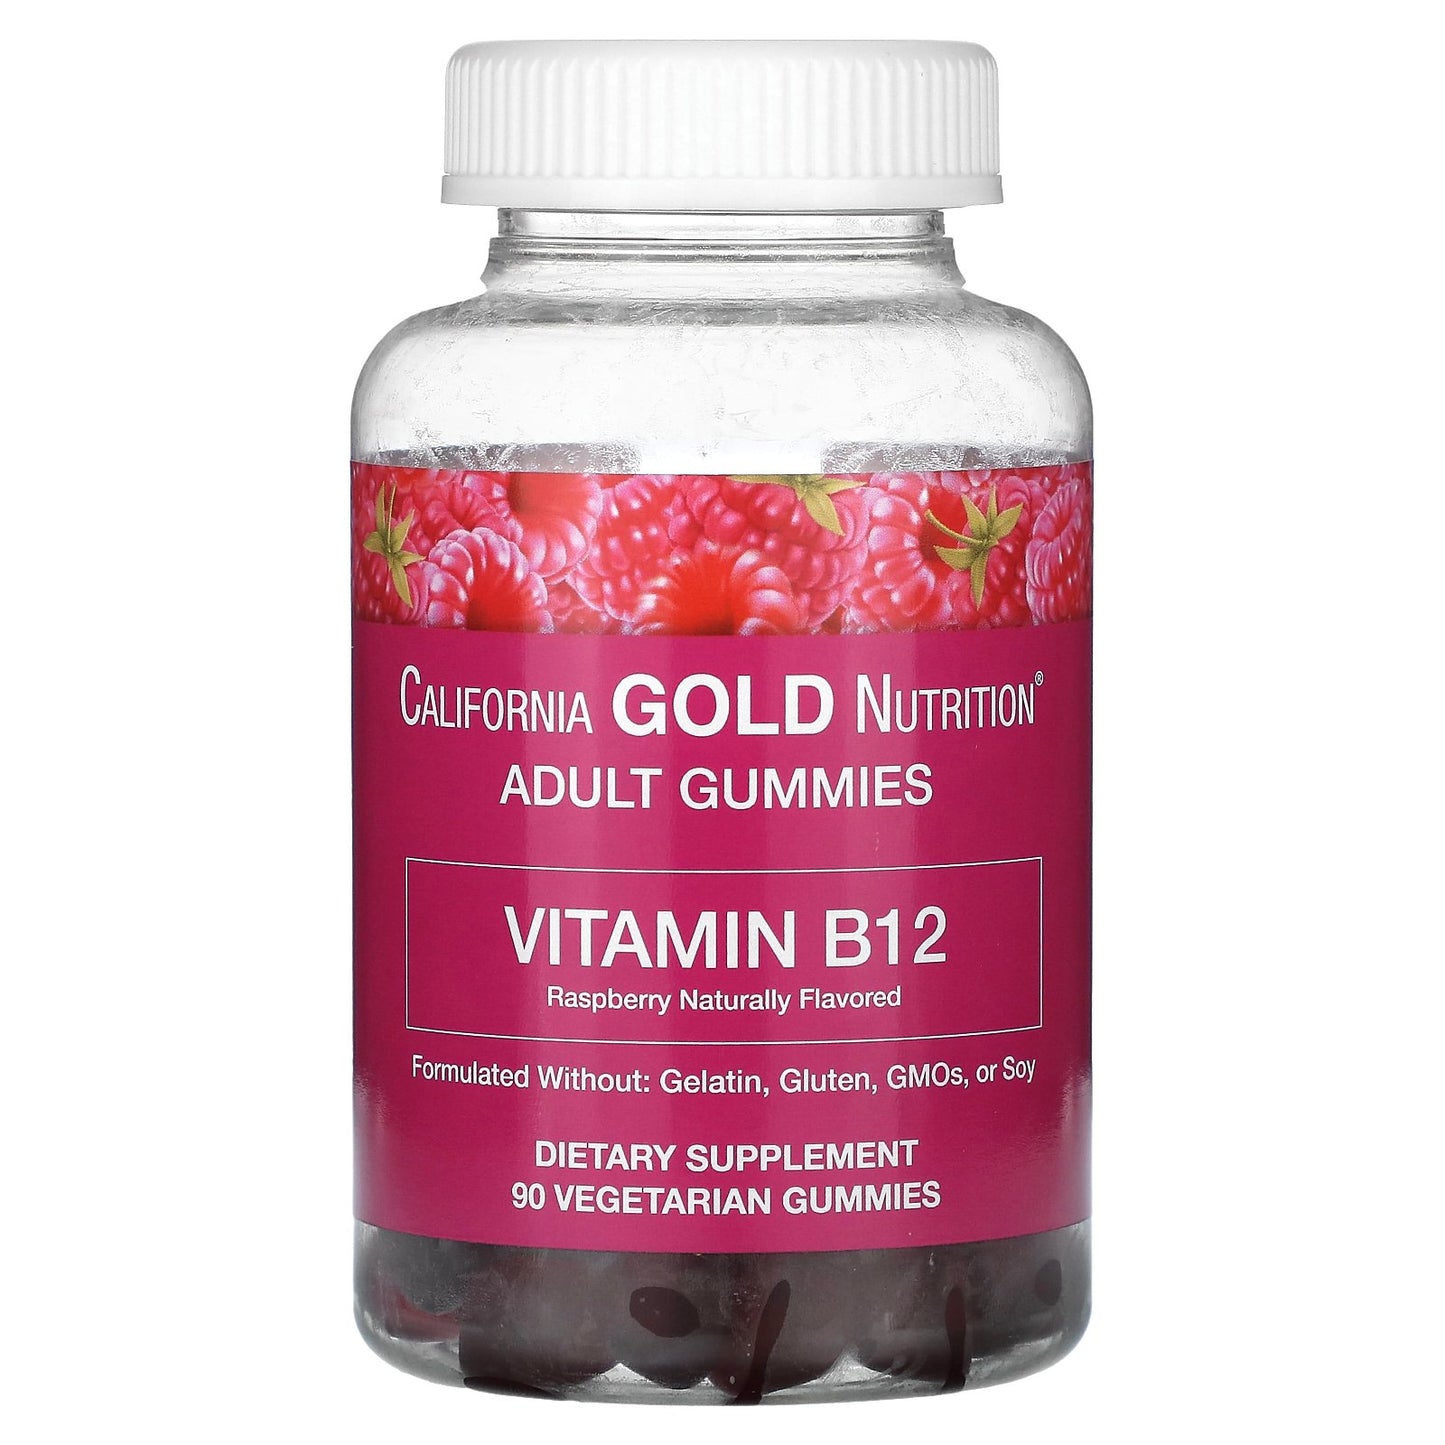 California Gold Nutrition, Vitamin B12 Gummies, Natural Raspberry, Gelatin Free, 3,000 mcg, 90 Gummies (1,500 mcg per Gummy)